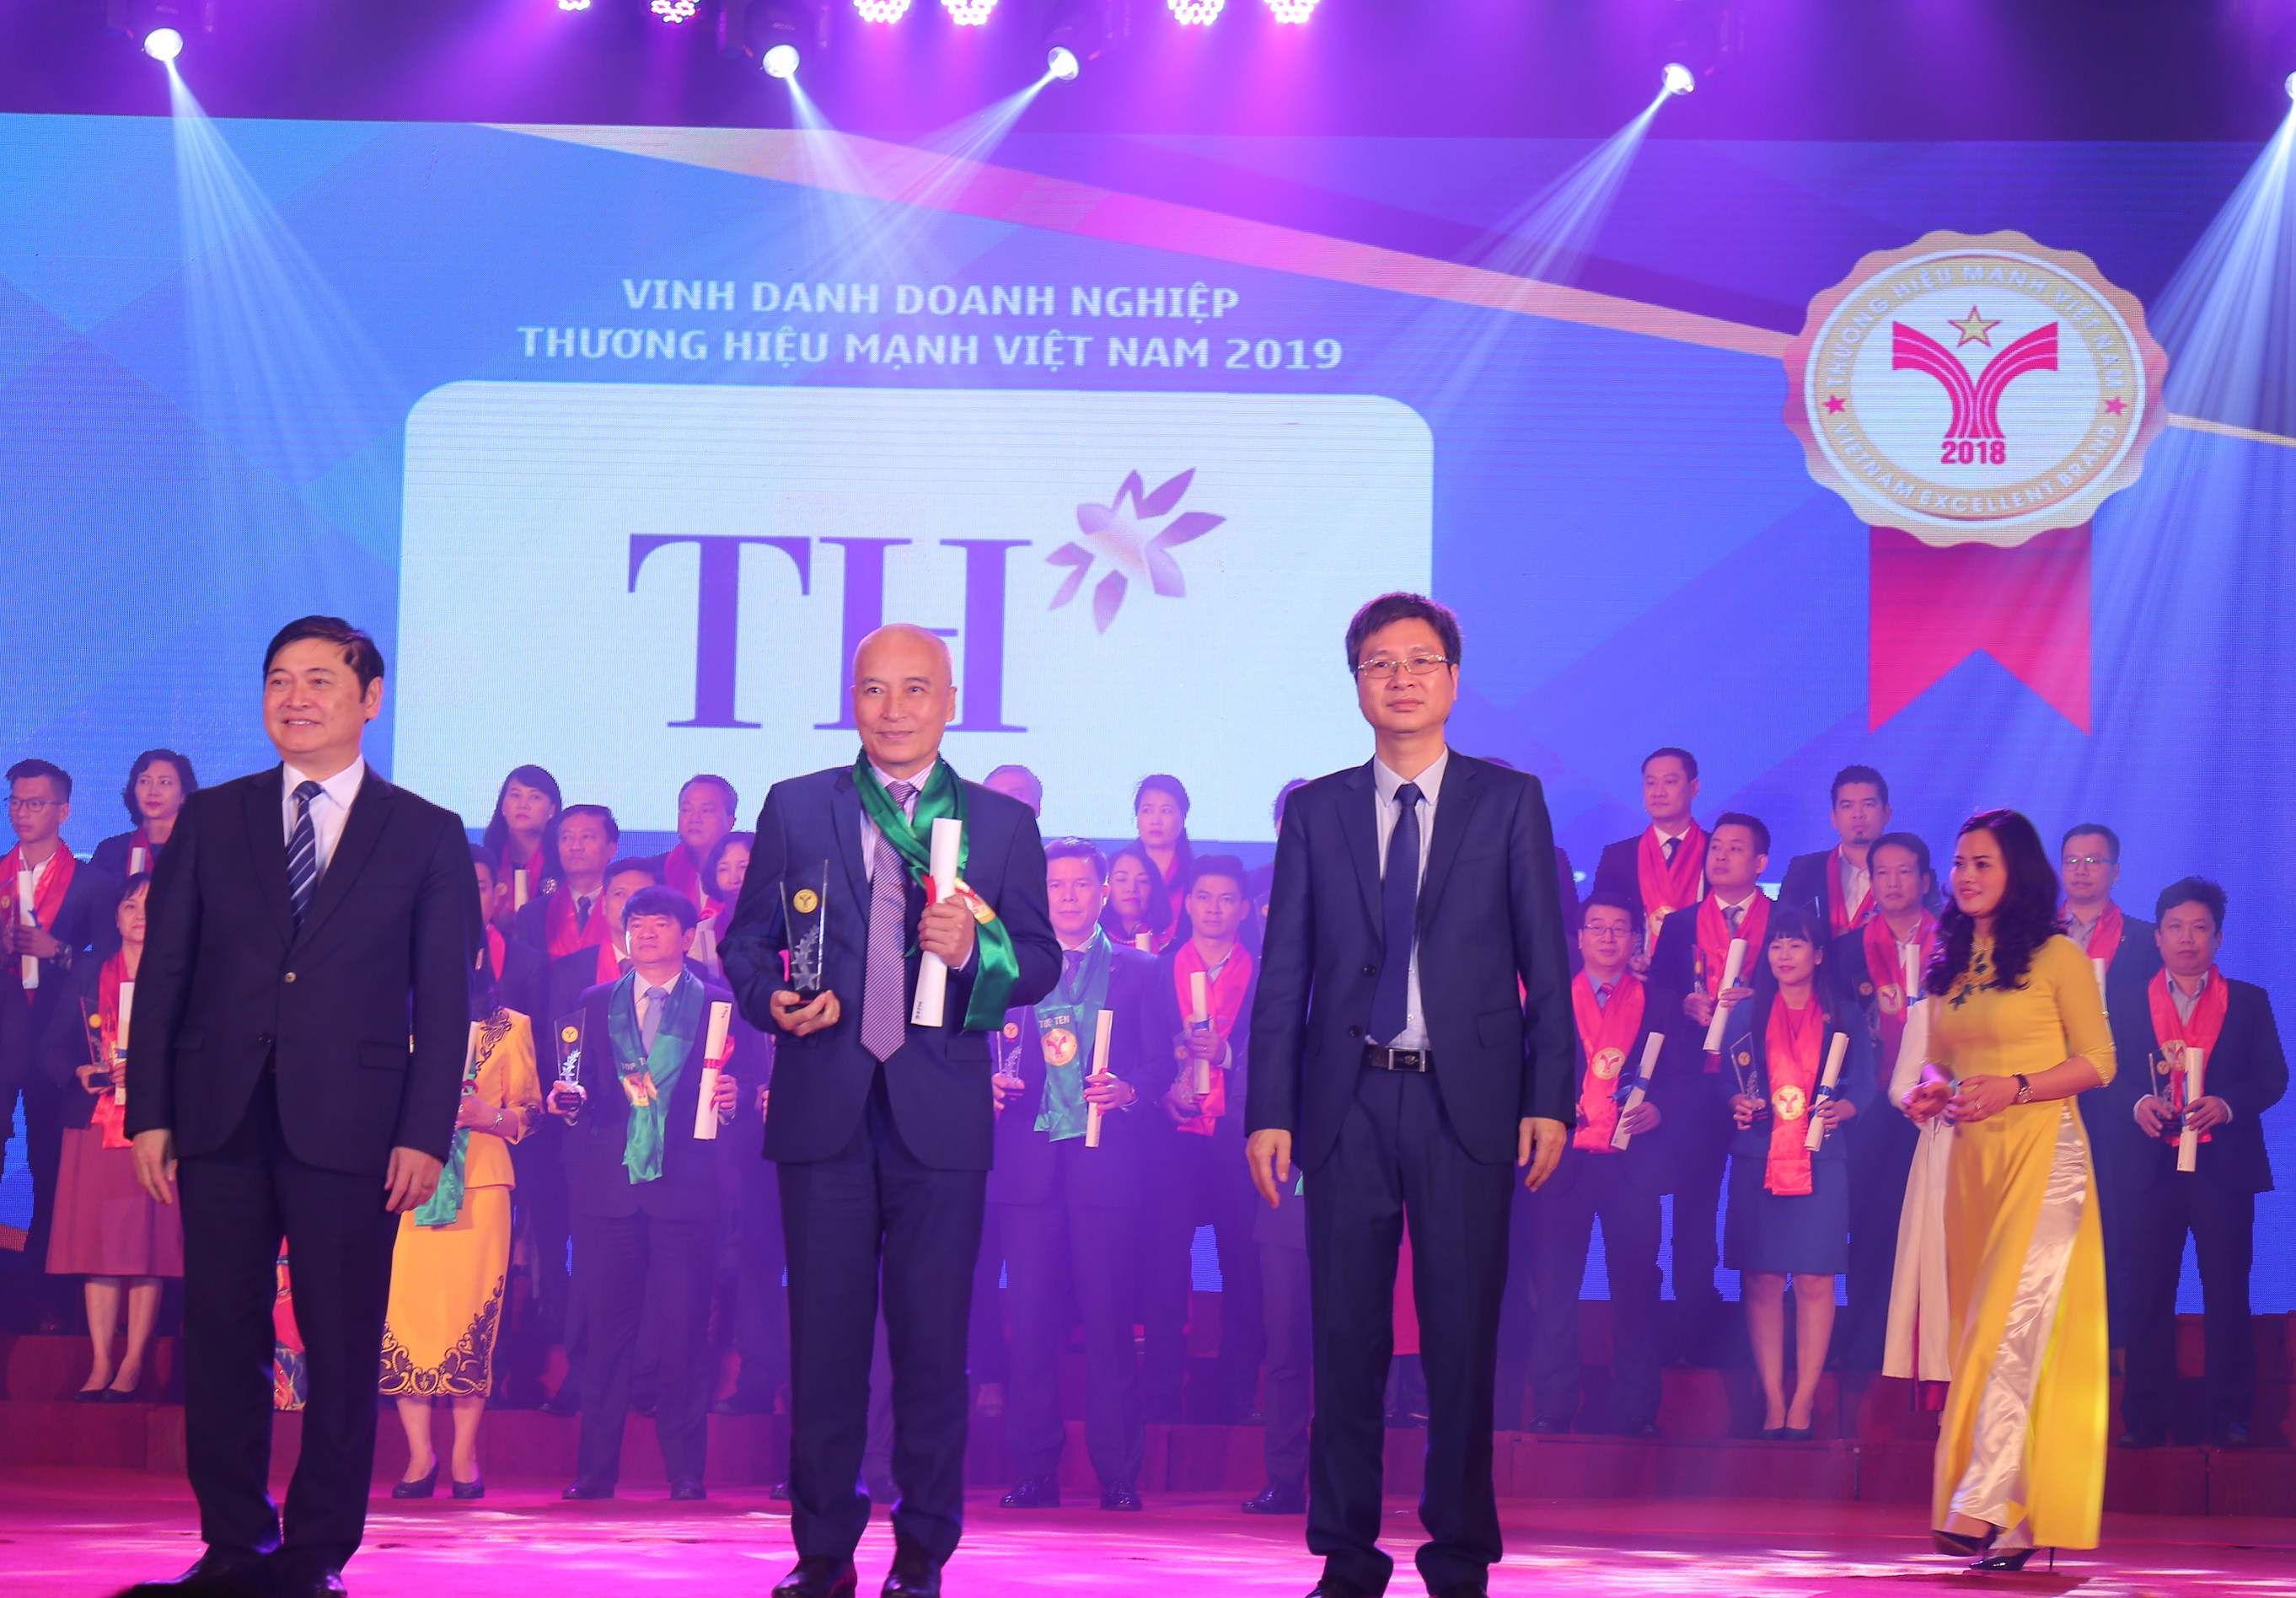 Tập đoàn TH: Doanh nghiệp sữa tươi duy nhất lọt Top 10 Thương hiệu mạnh Việt Nam 2018